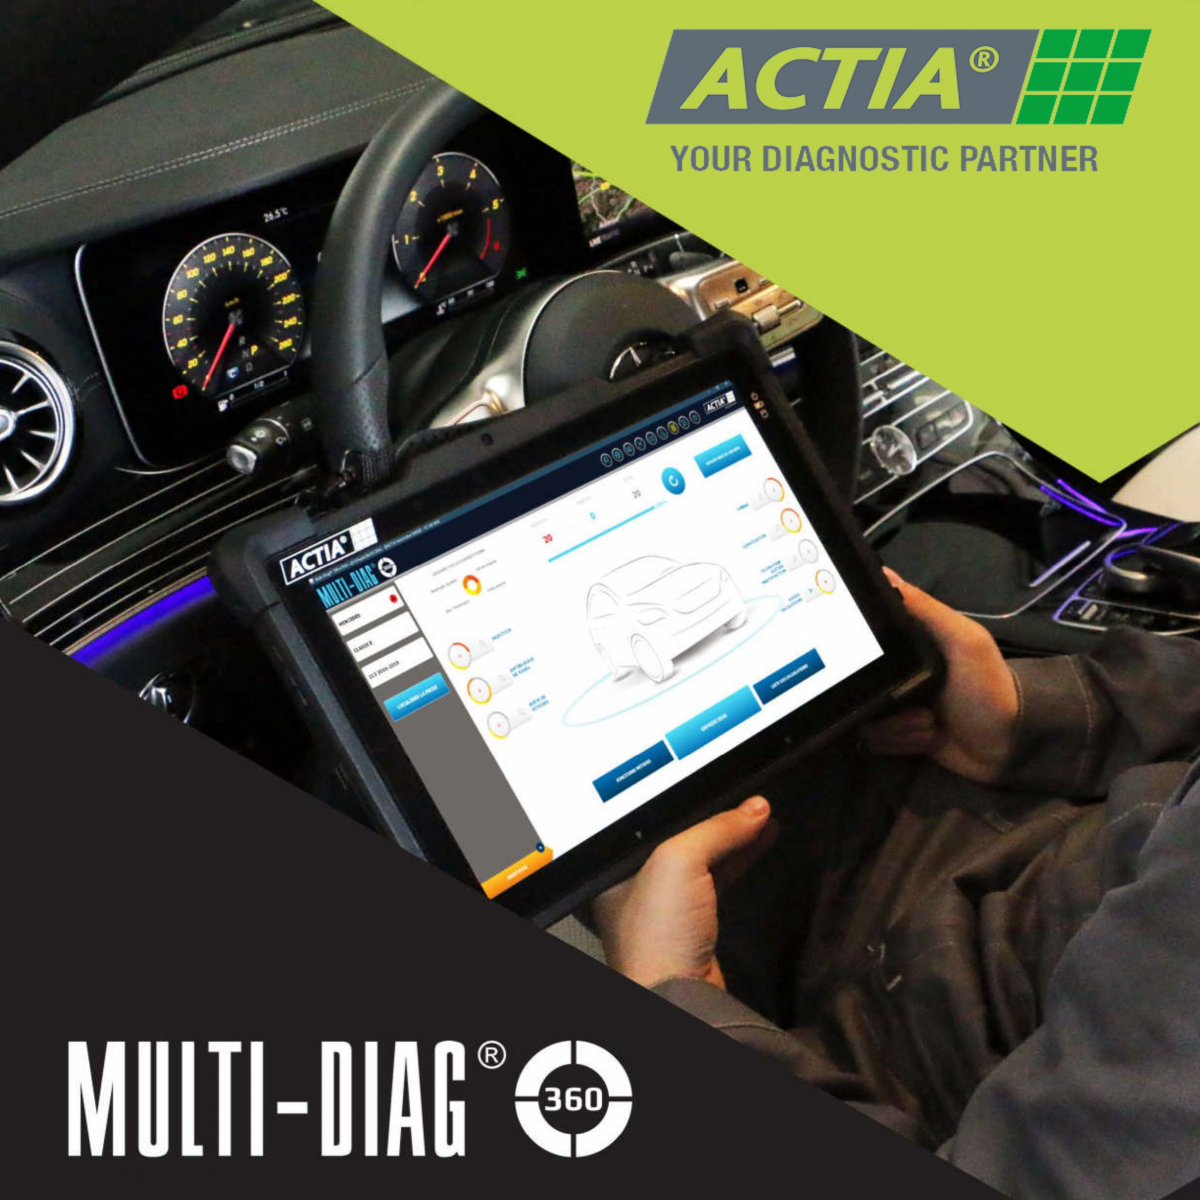 Actia Multi-Diag 3 Multi Brand j2534 Diagnostic Software